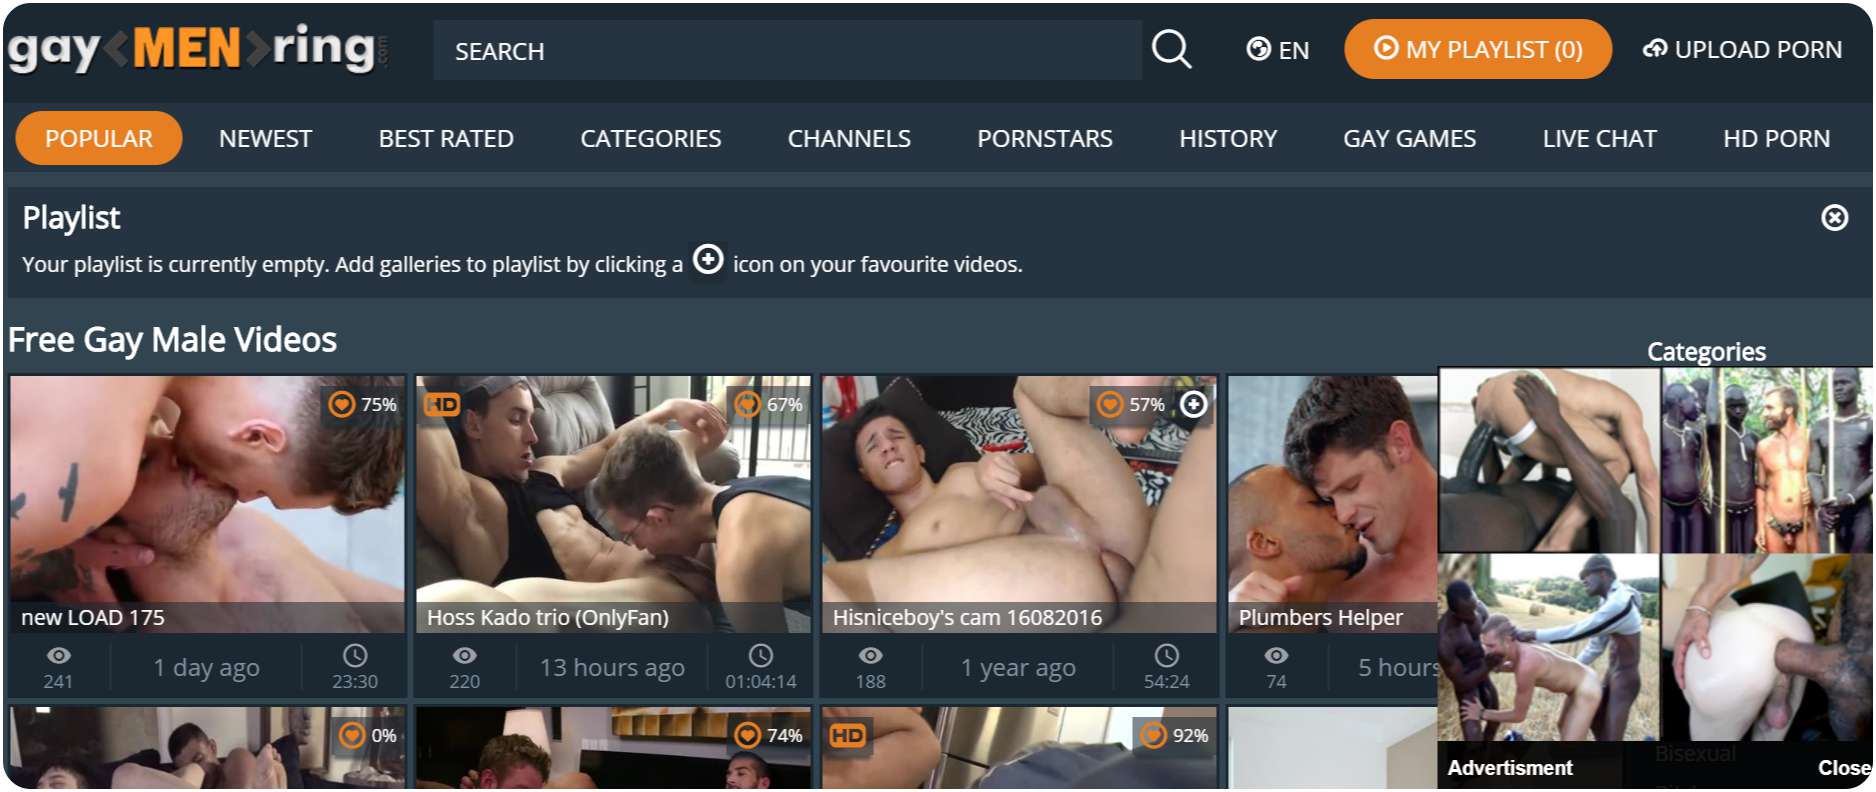 Buscadores de paginas porno